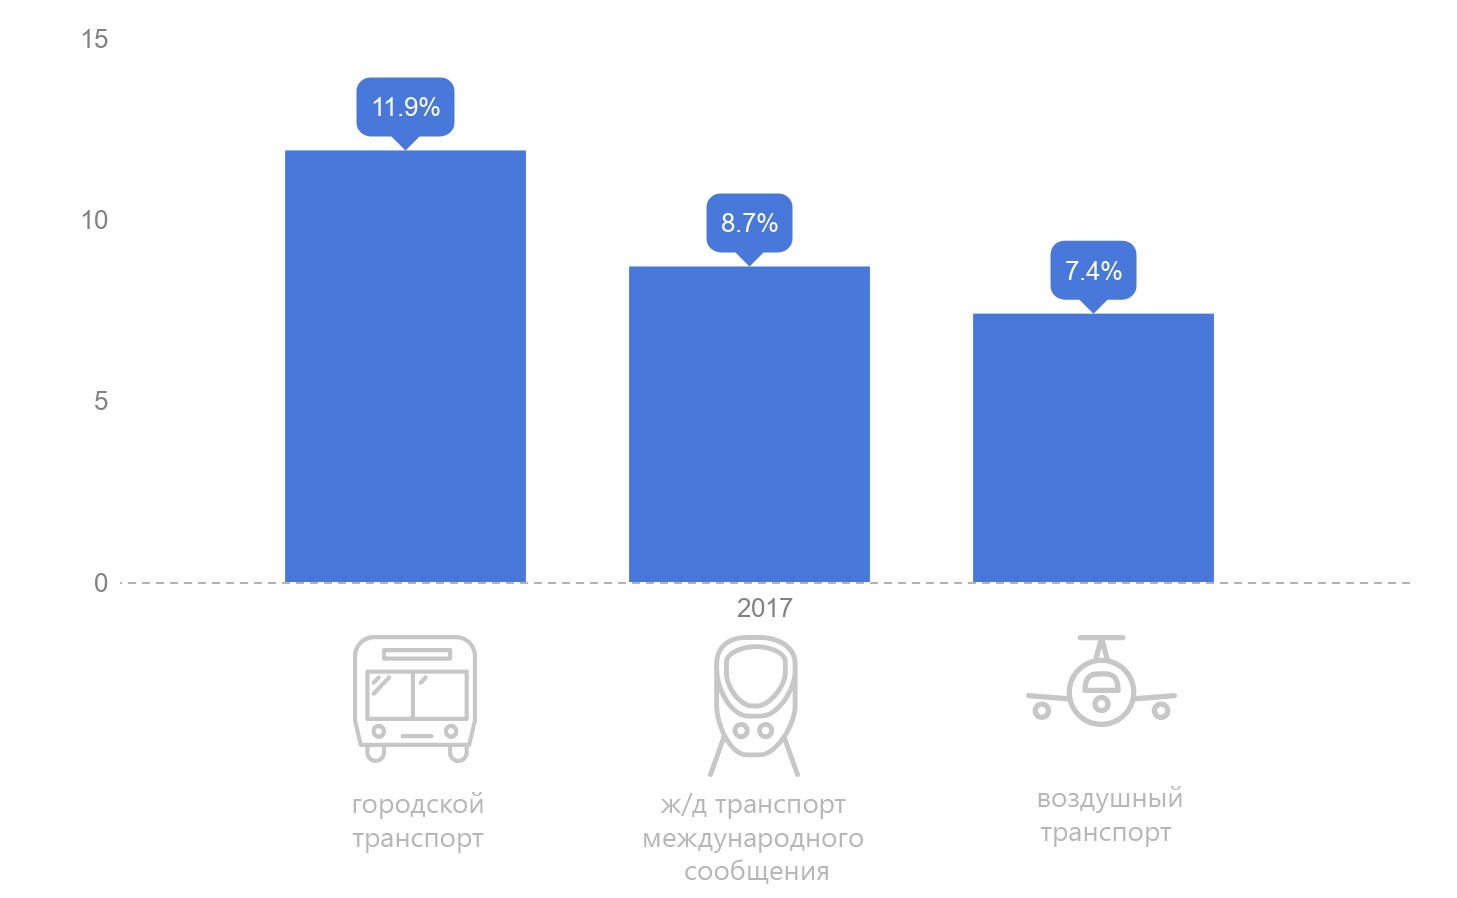 Какие виды пассажирского транспорта в 2017 году подорожали больше всего